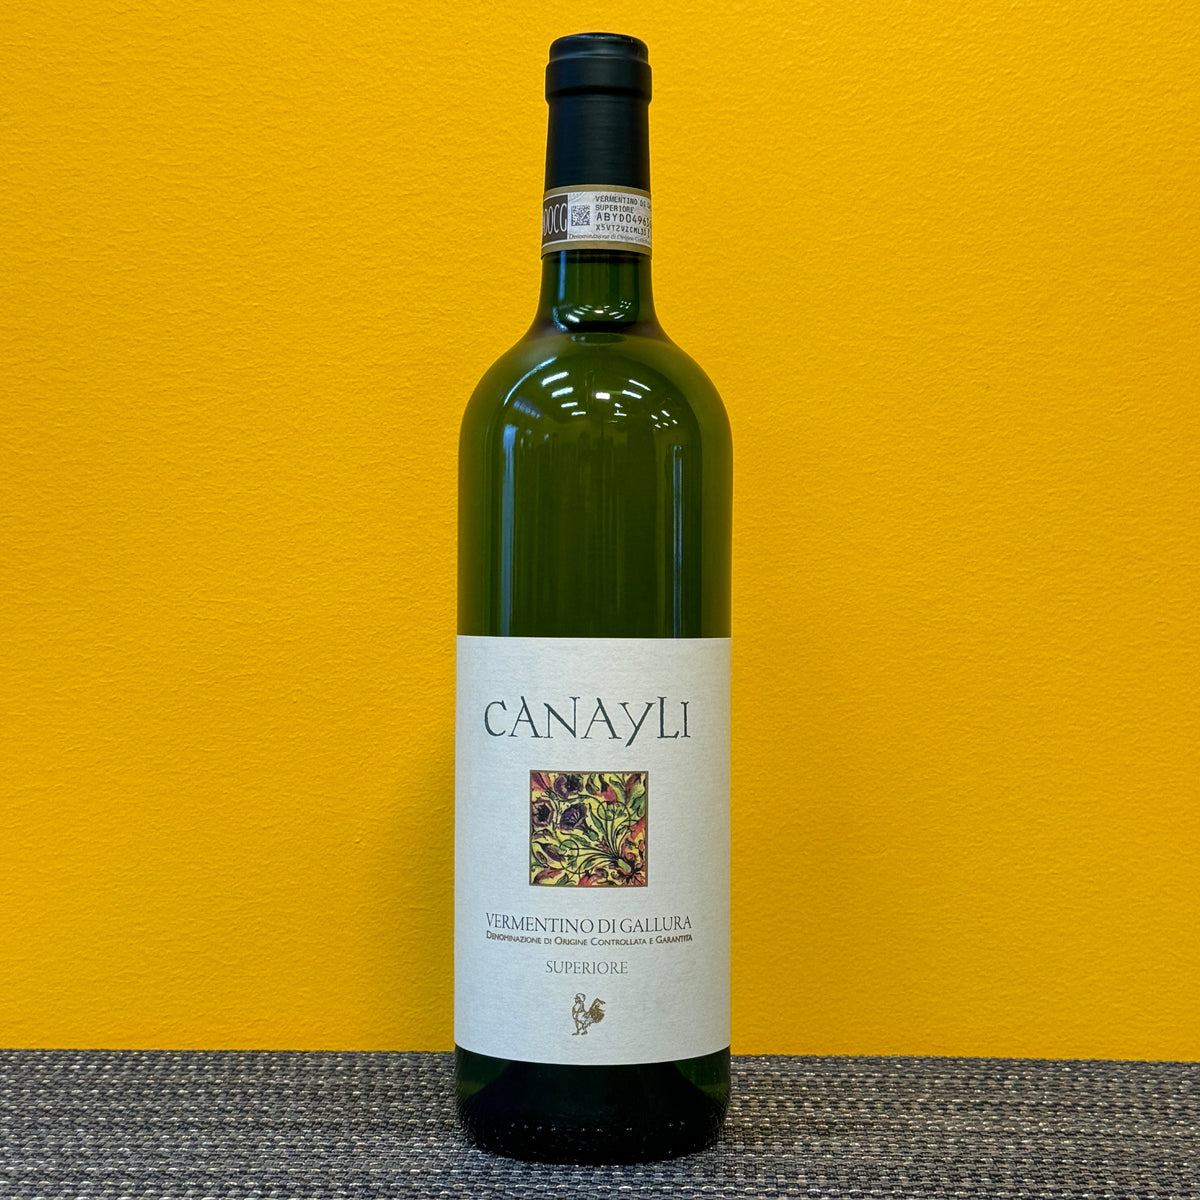 A bottle of Cantina di Gallura Vermentino di Gallura Canayli white wine